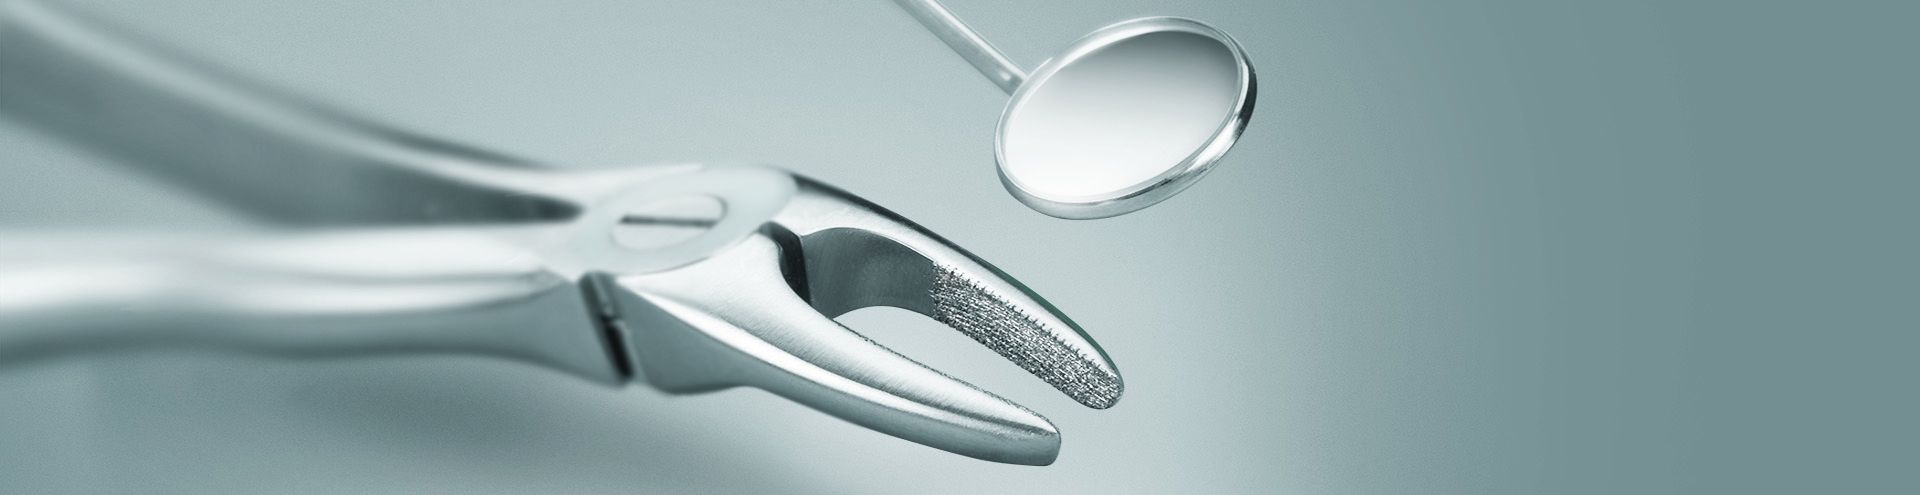 Instrumentos para la cirugía dental y oral